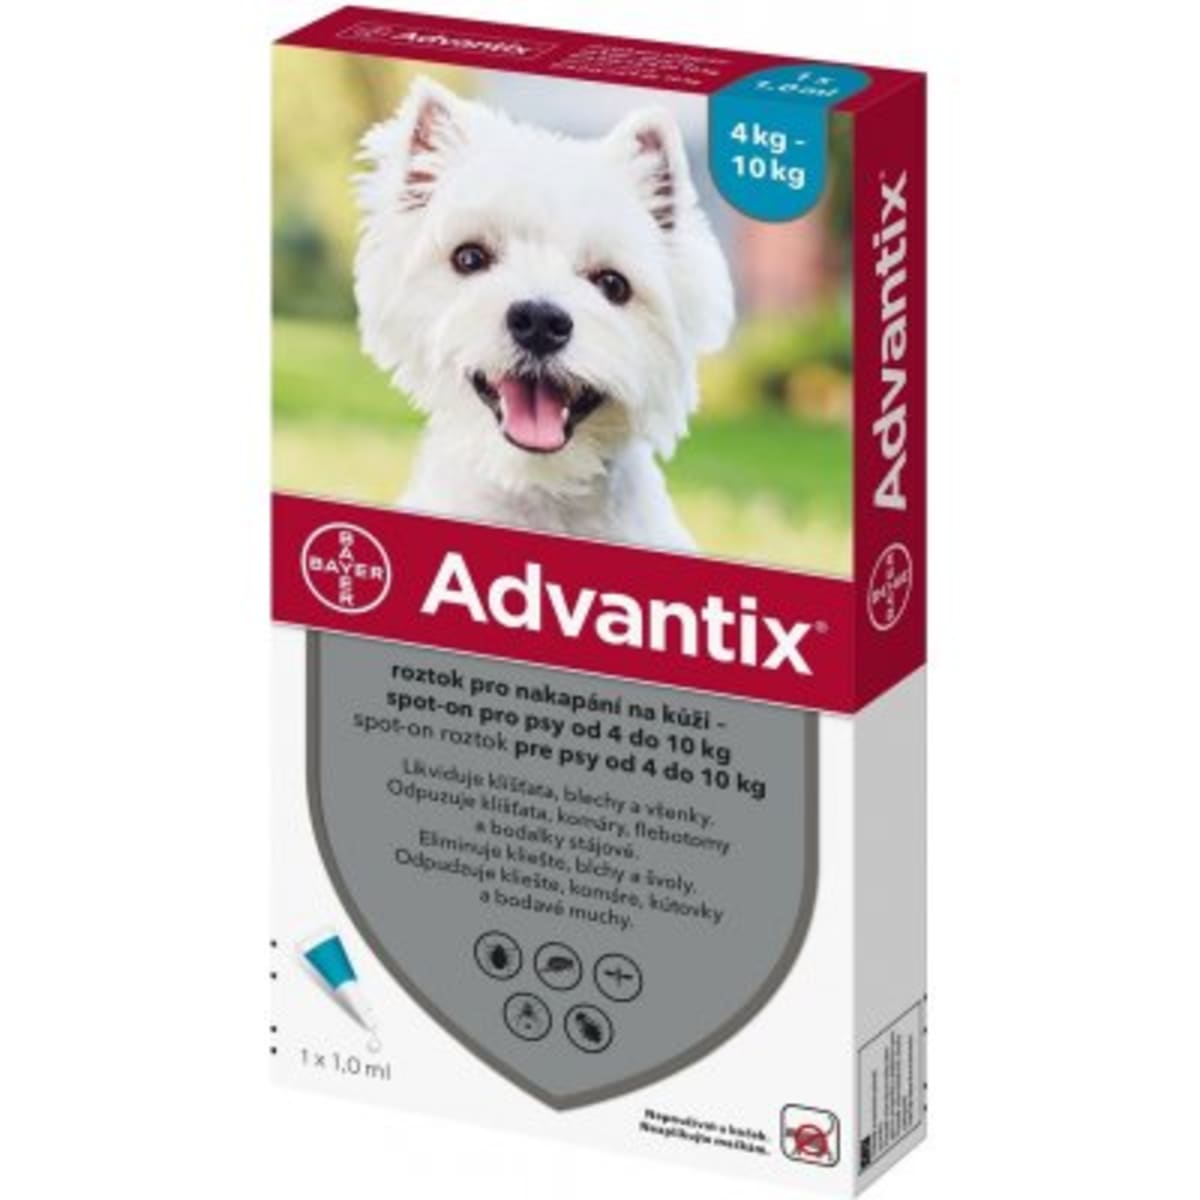 Advantix je veterinární léčivý přípravek. Pečlivě čtěte příbalovou informaci. Nepoužívejte pro kočky